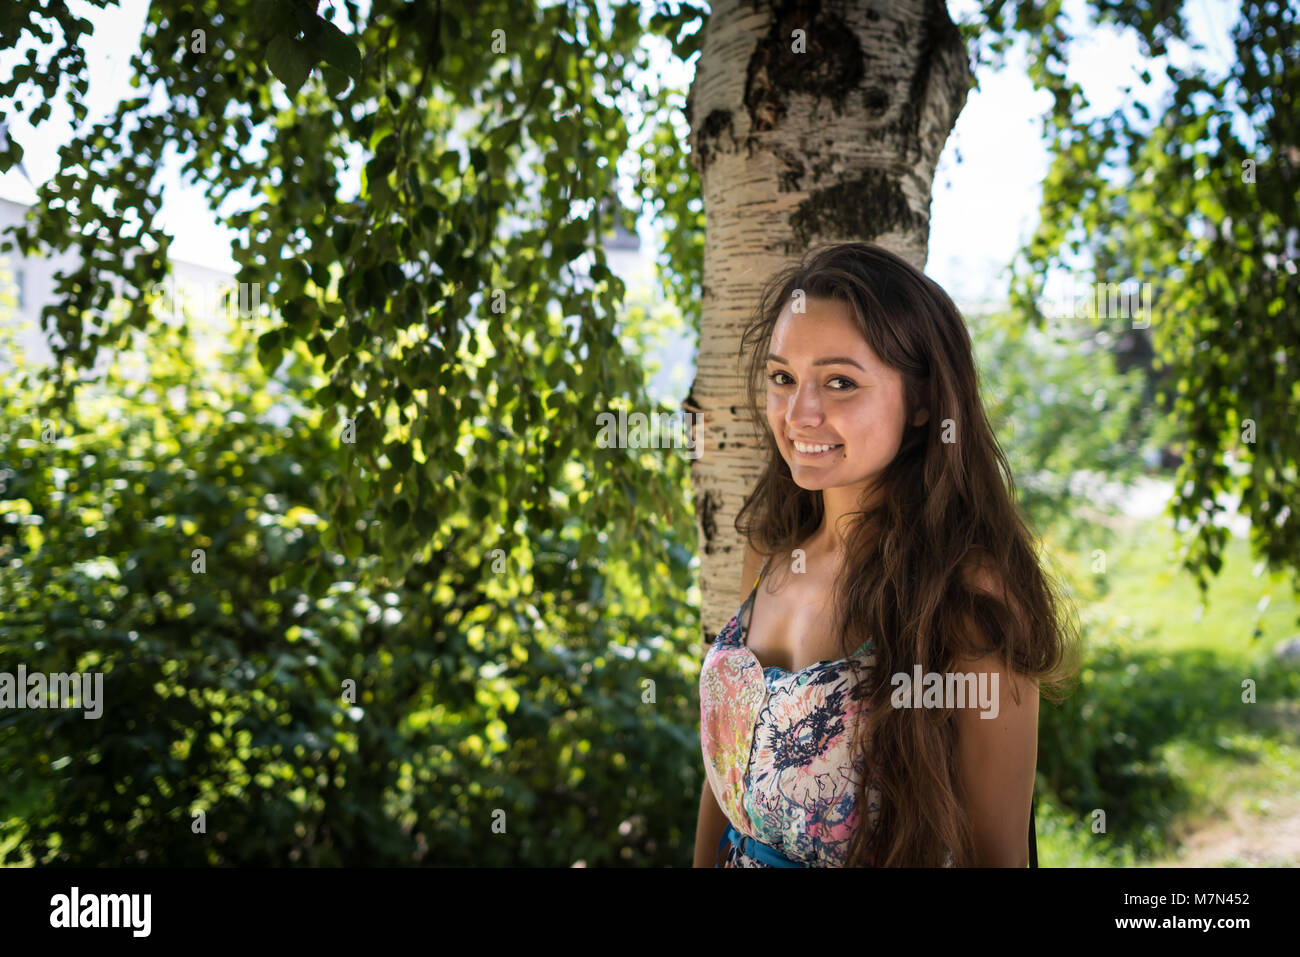 Giovane donna si erge nei pressi di albero in parco su sfondo di foglie verdi con raggi di sole. Allegro ragazza sorride sotto la betulla in un caldo giorno d'estate Foto Stock